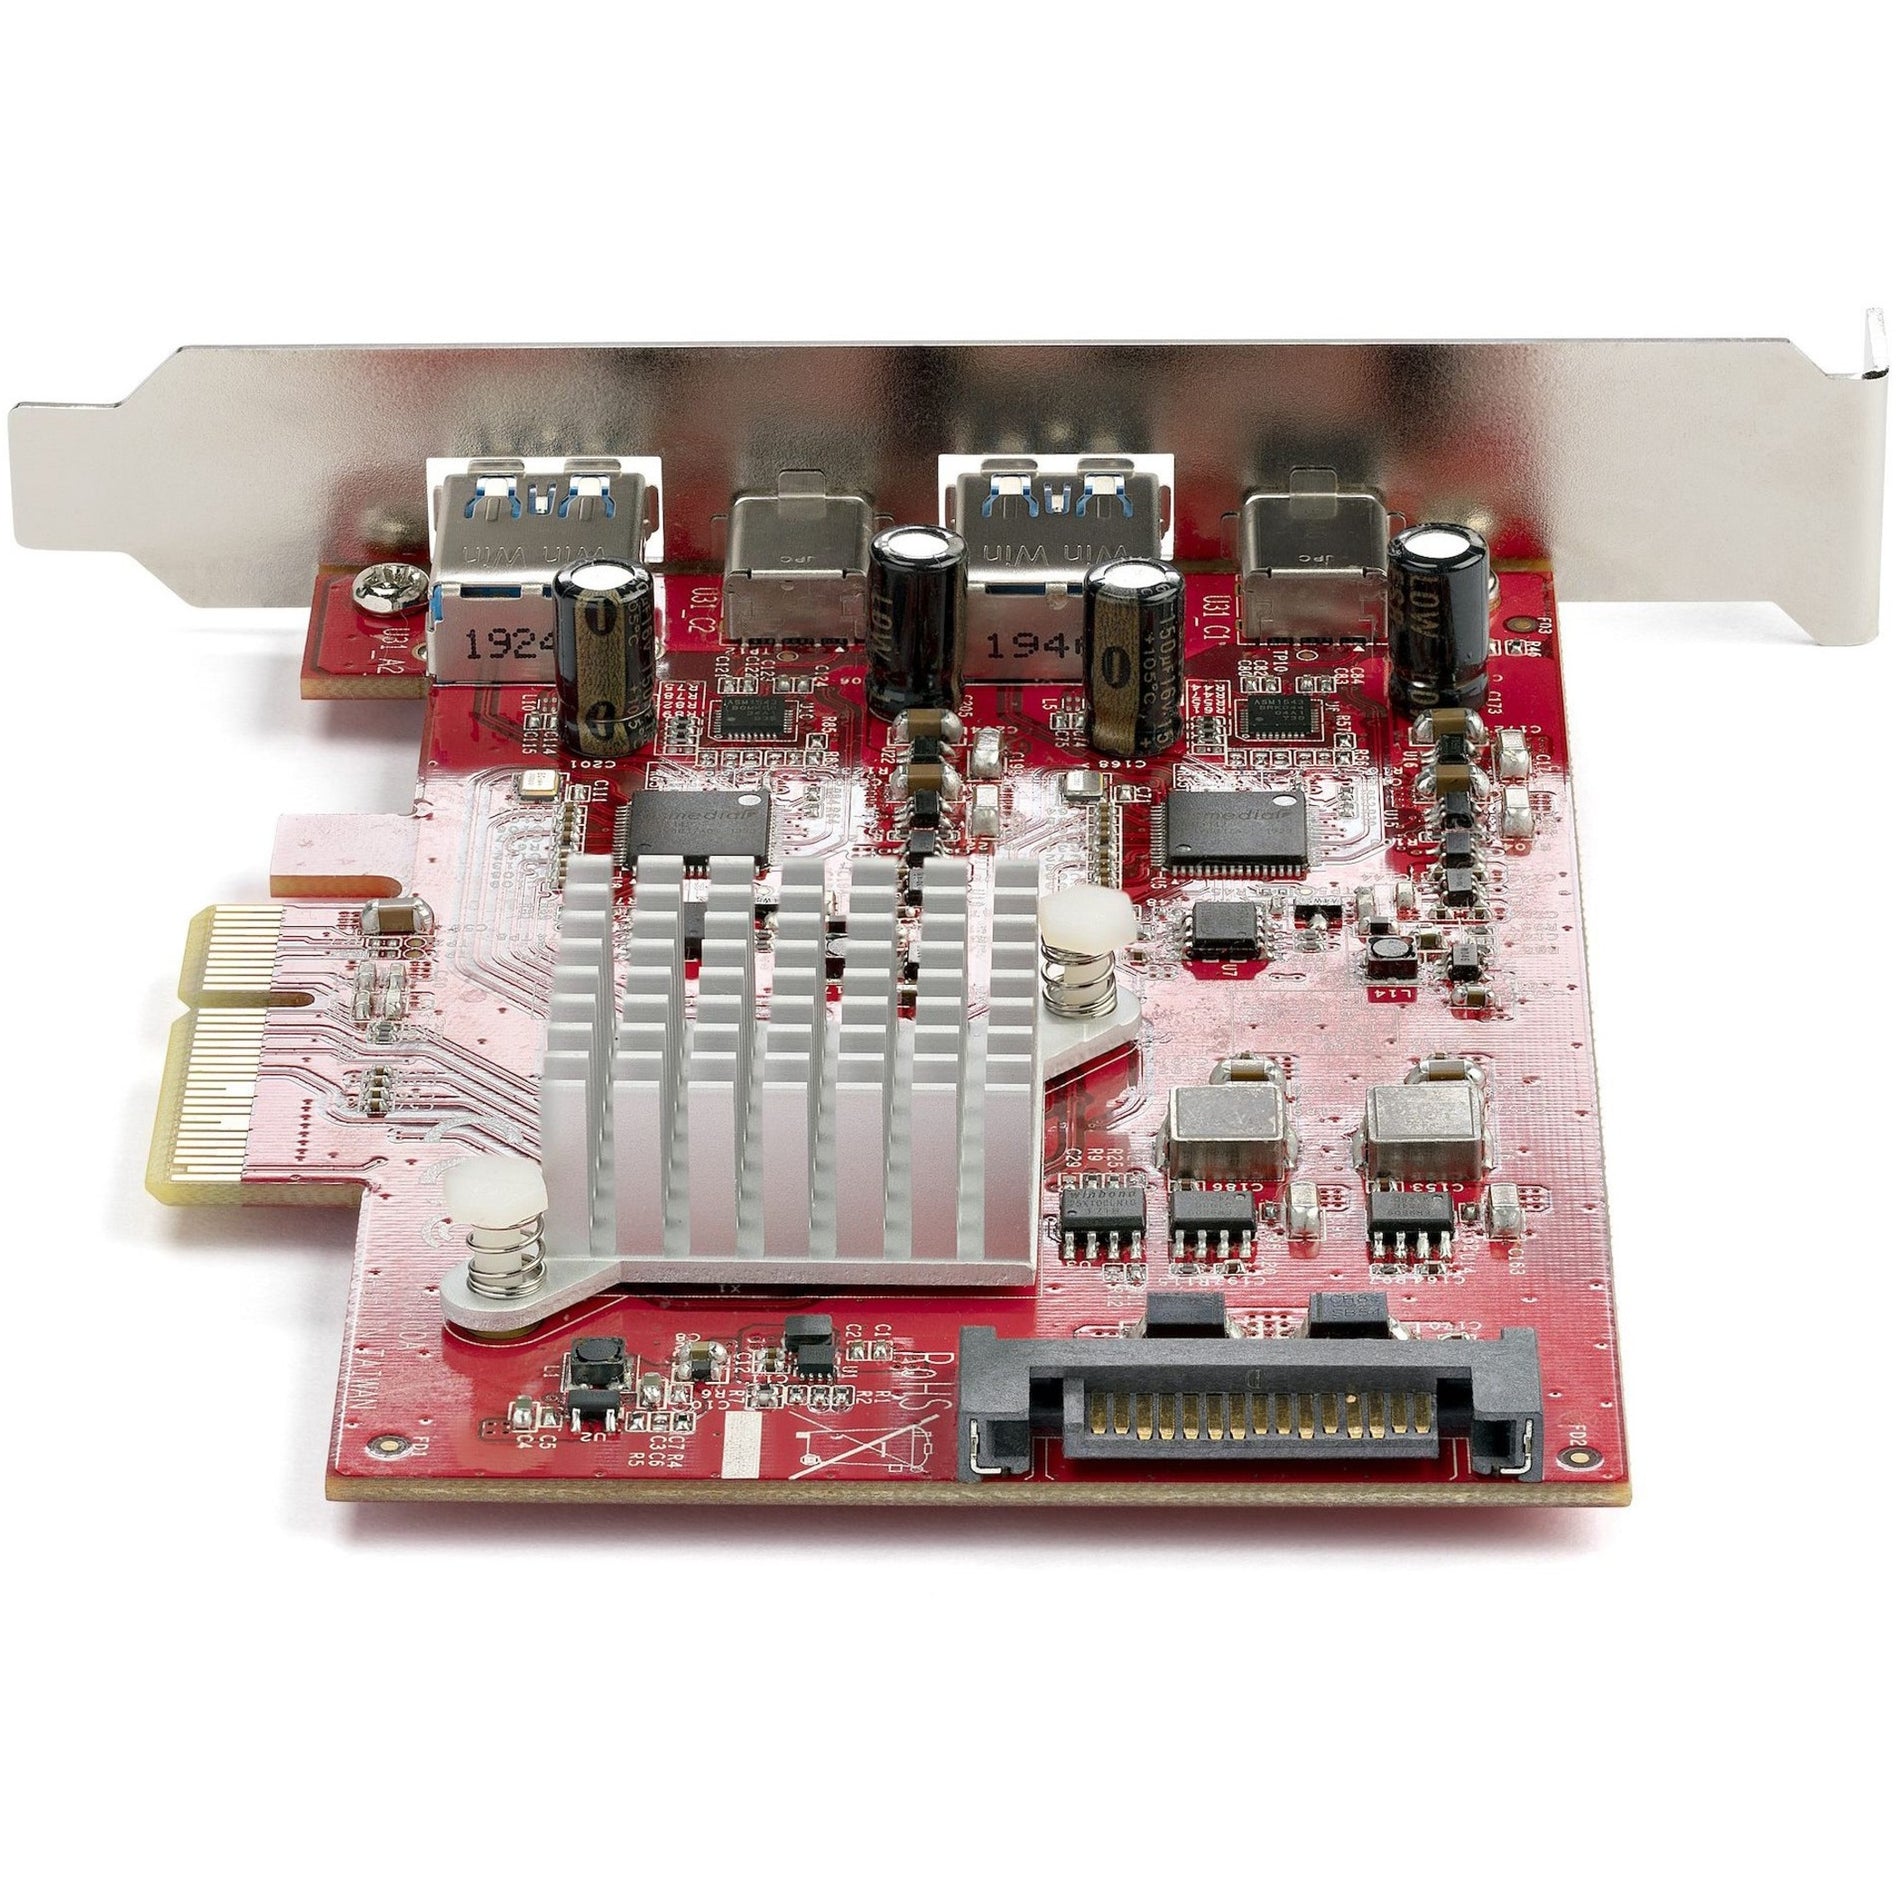 スタートレックドットコム PEXUSB312A2C2V PCIエクスプレスUSBカード、10Gbps速度の4ポートUSB PCIeカード、2つのUSB-Cポートと2つのUSB-Aポート